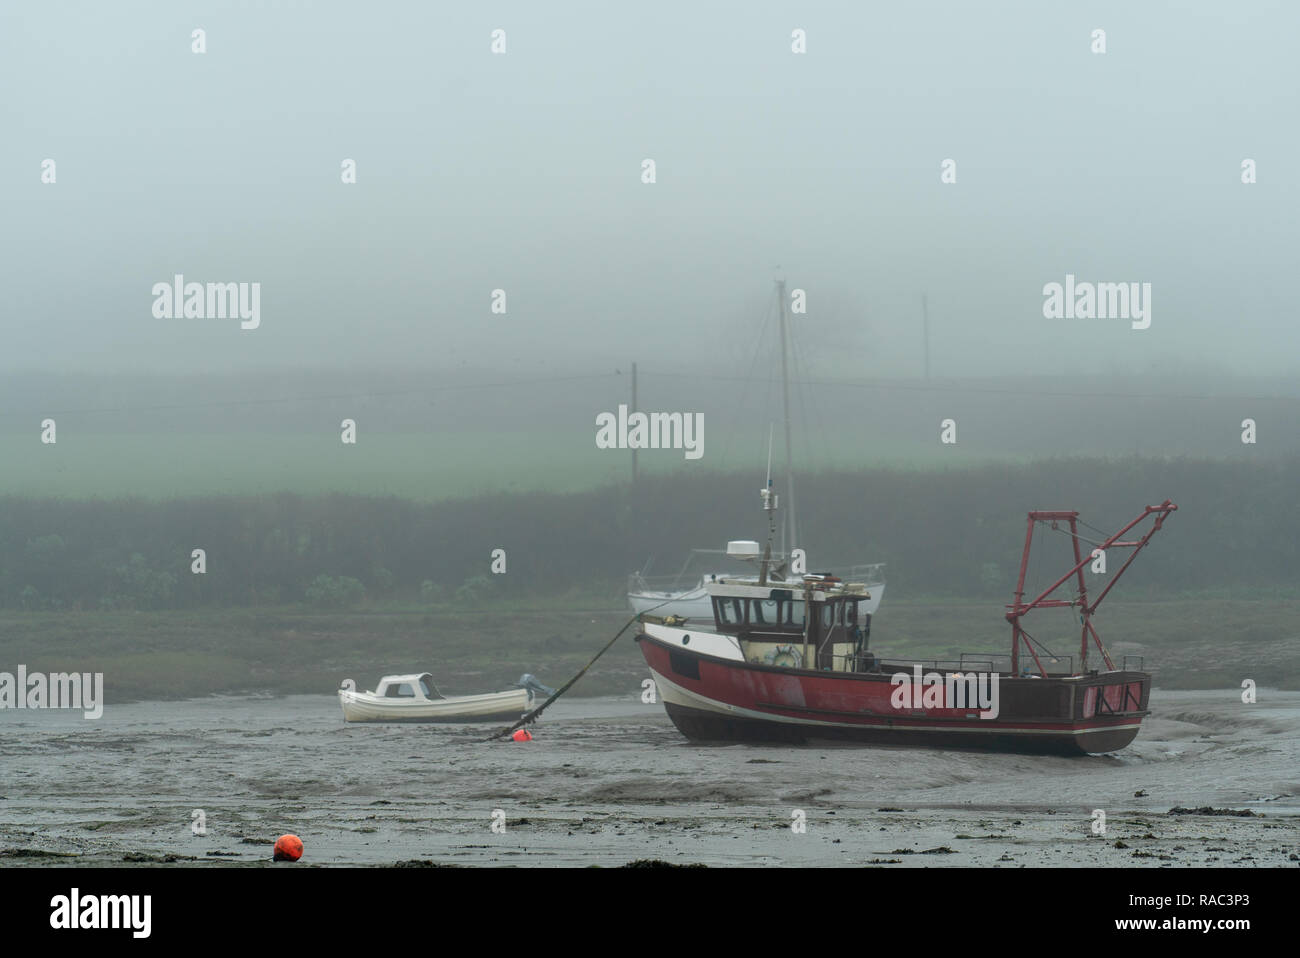 Bateaux sur terre durant la marée basse, le Pays de Galles UK Banque D'Images